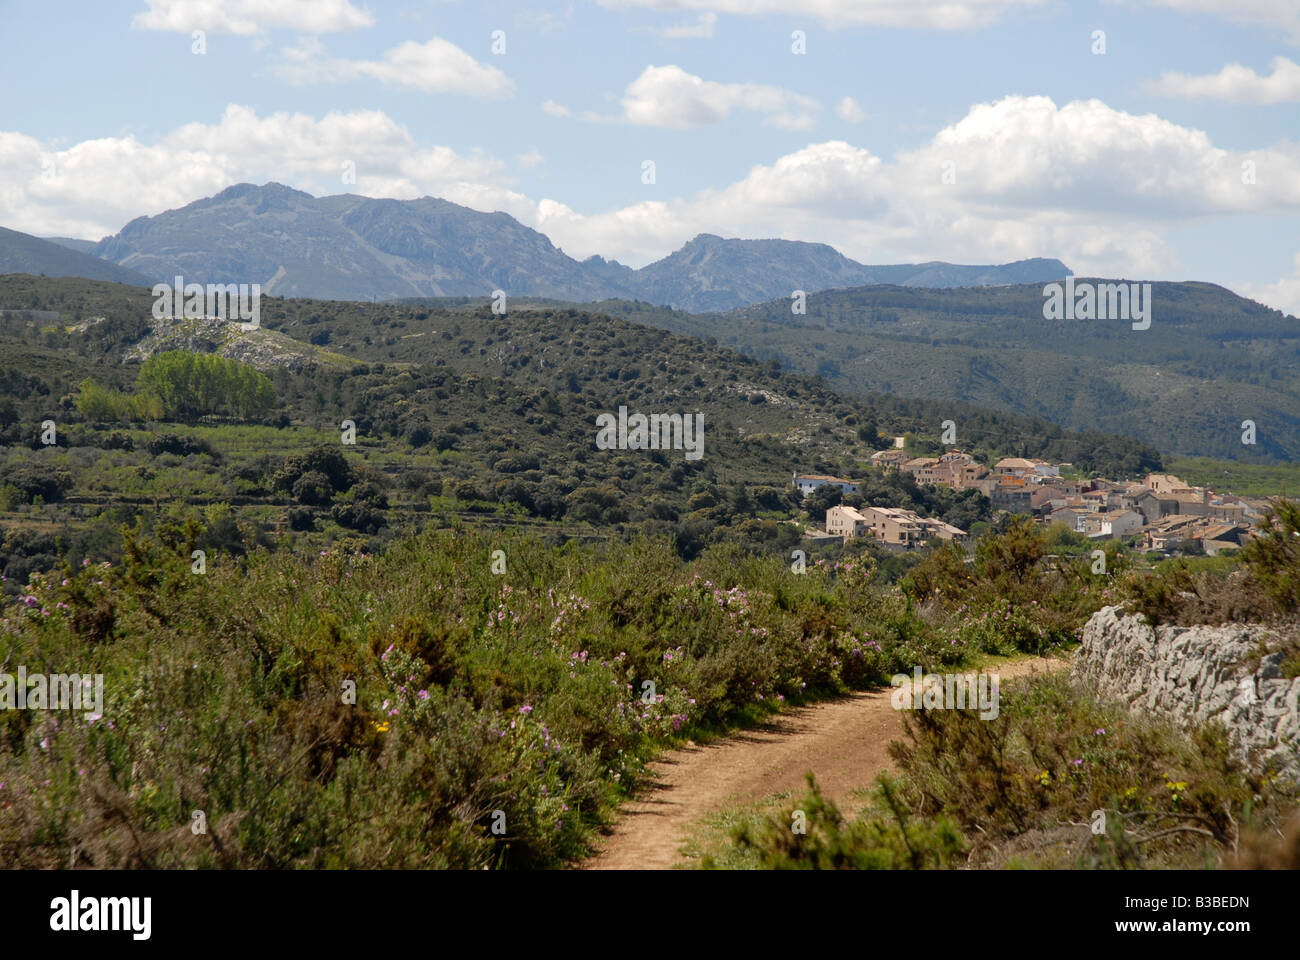 view to village of Alcala de la Jovada, Vall de Alcala, Alicante province, Comunidad Valenciana, Spain Stock Photo